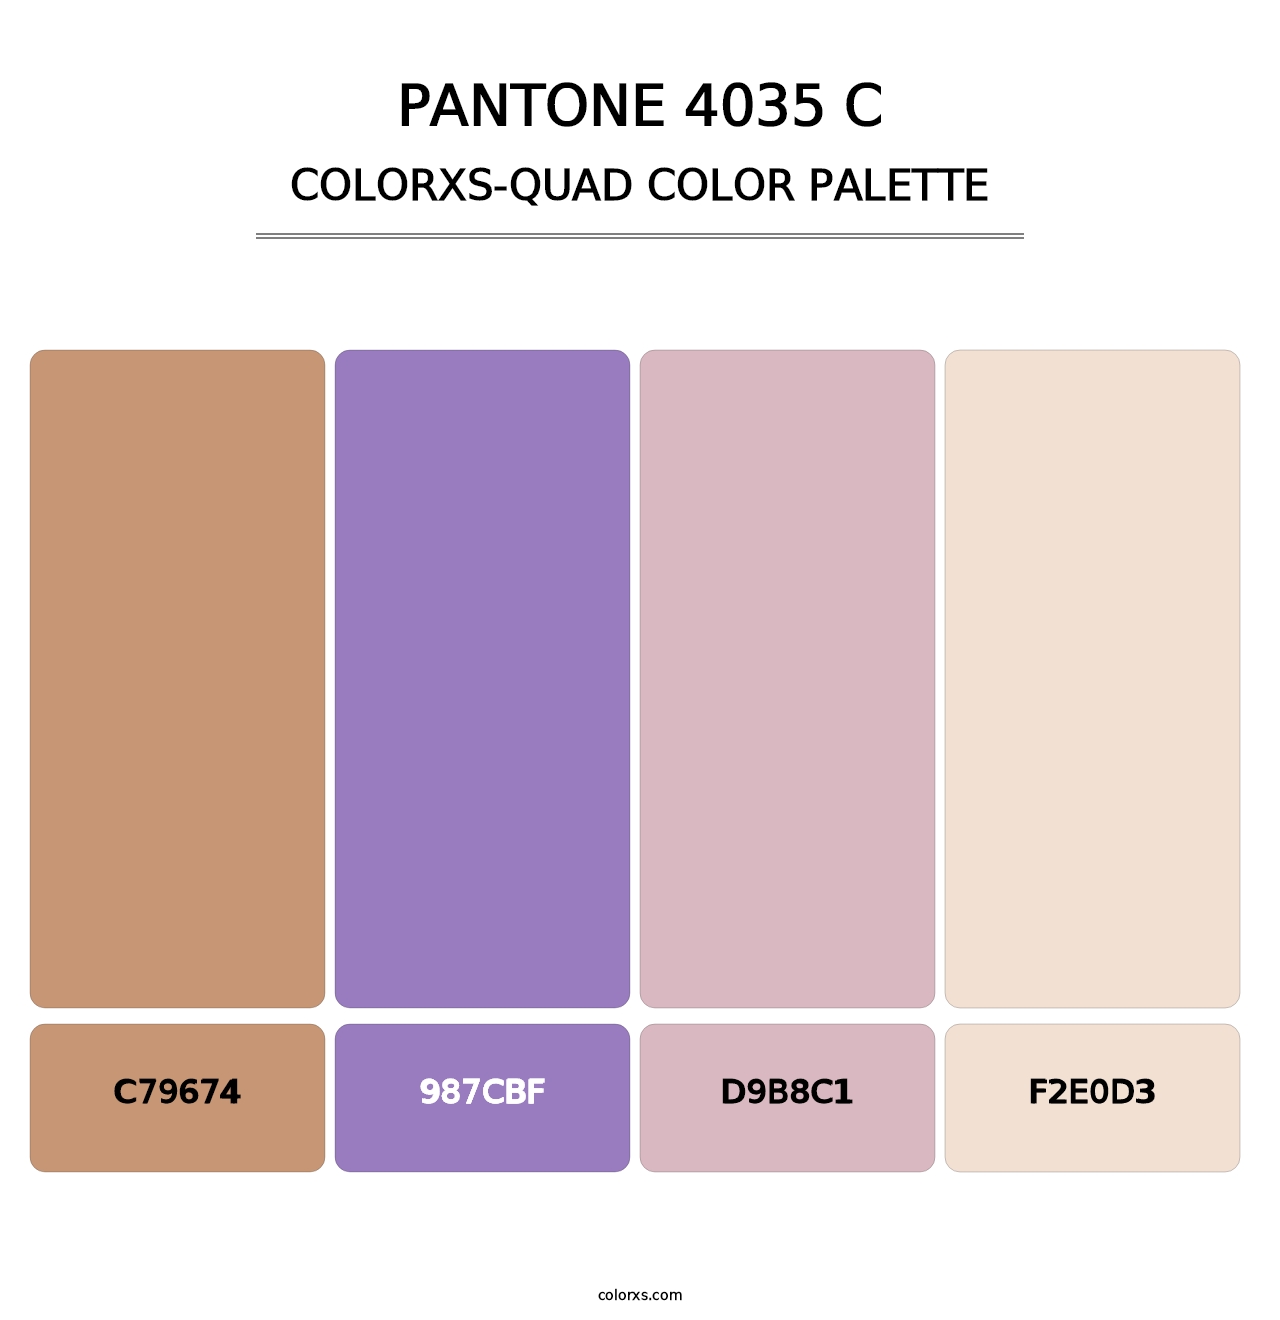 PANTONE 4035 C - Colorxs Quad Palette